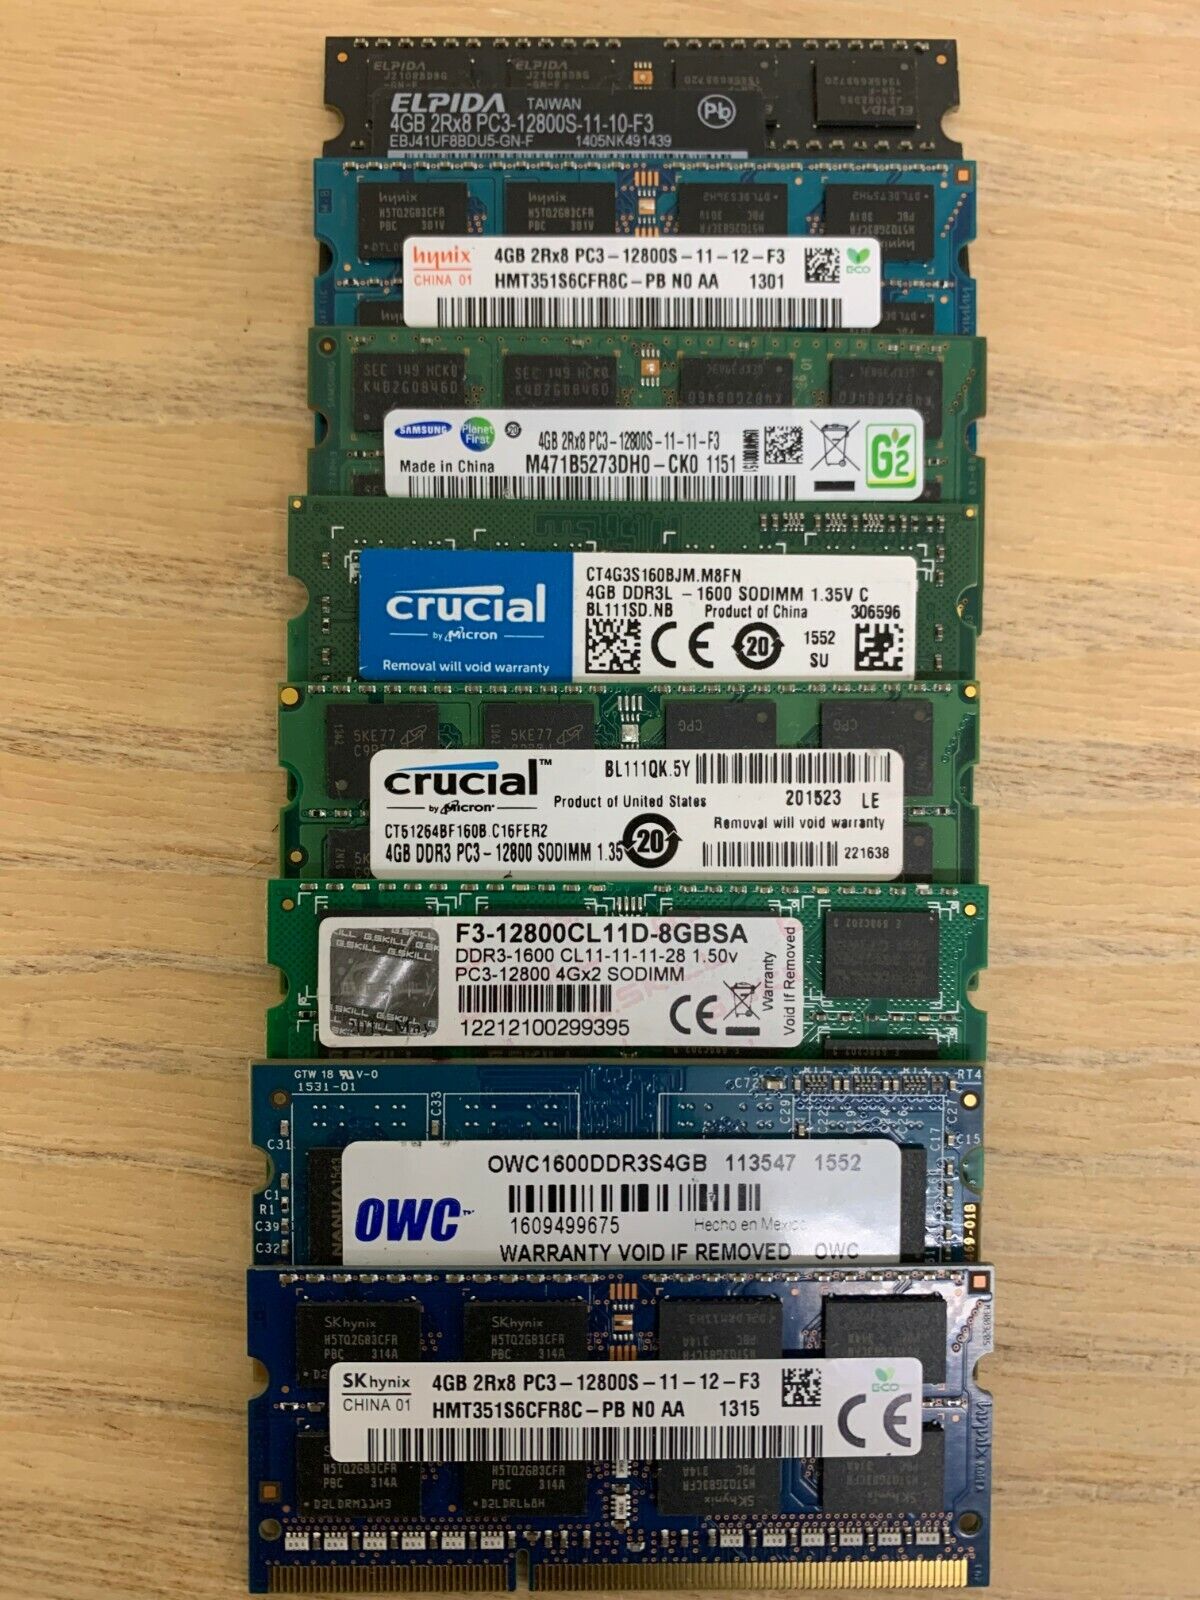 4GB PC3-12800 DDR3 Single Stick MEMORY RAM SAMSUNG HYNIX CRUCIAL RANDOM BRAND.f